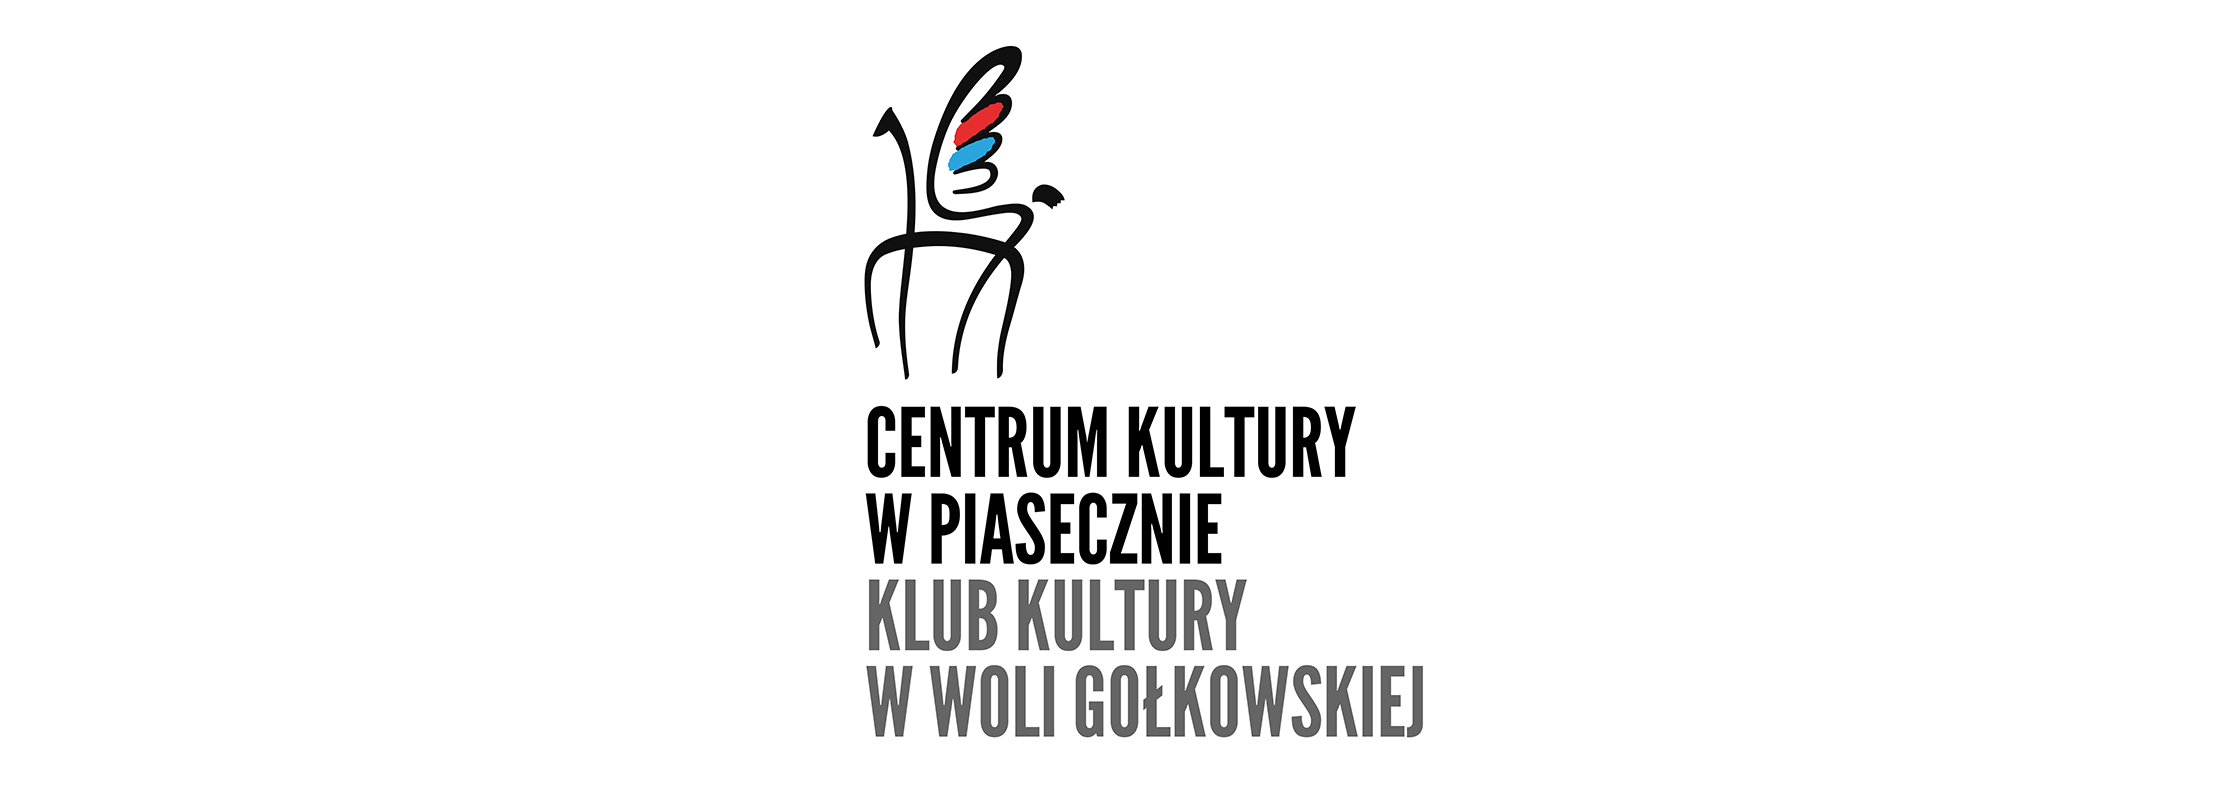 Projektowanie wnętrz  KK Wola Gołkowska